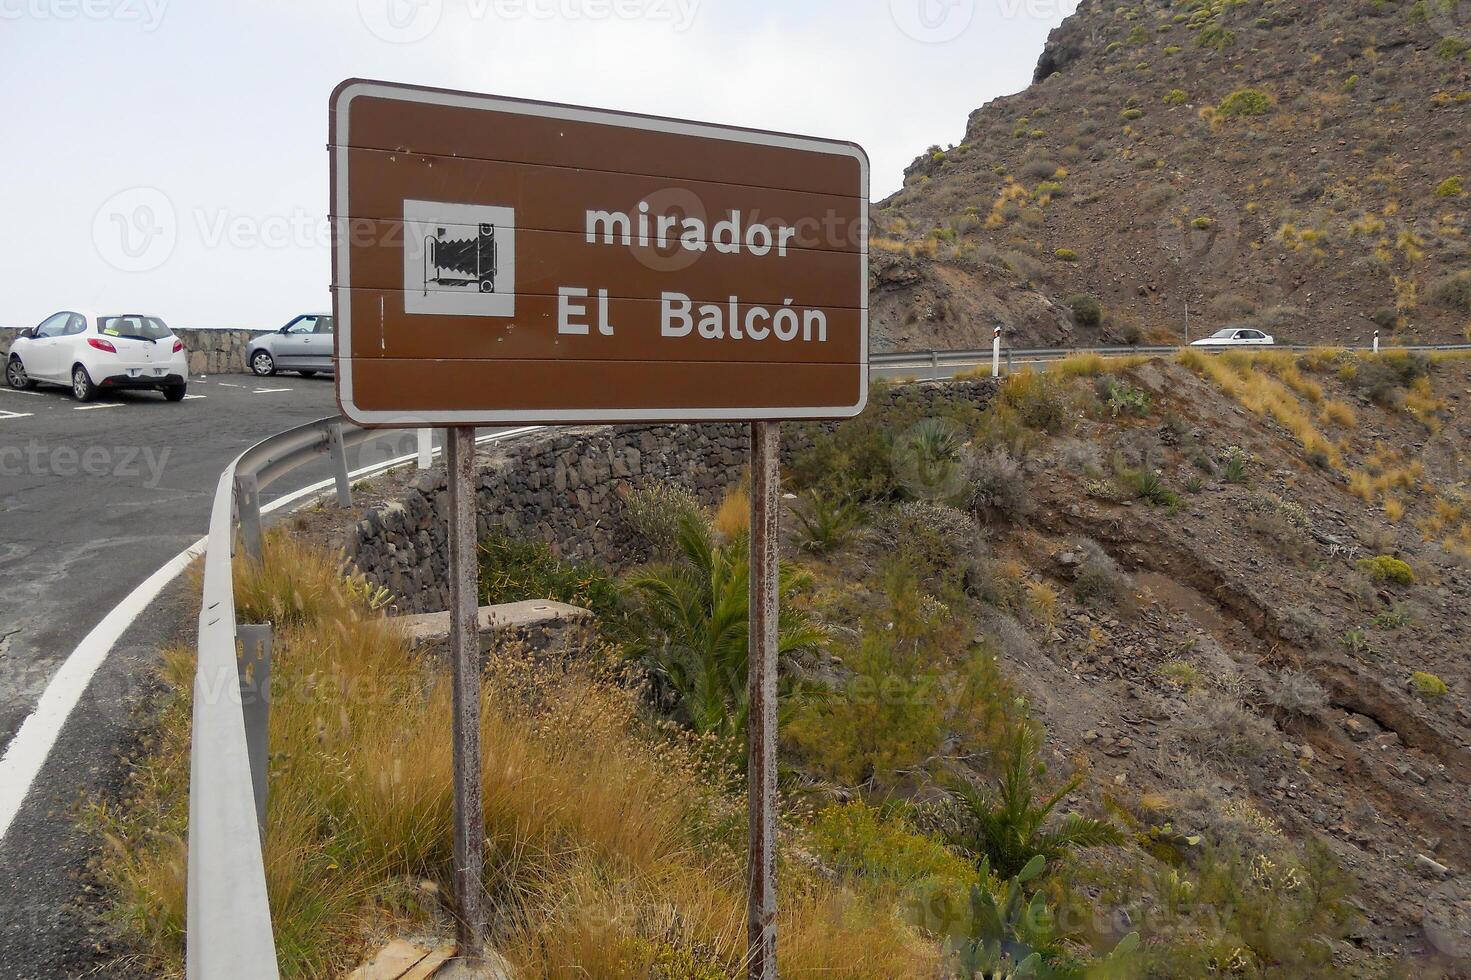 Wonderful corners of Gran Canaria, Maspalomas, Roque Nublo, Las Palmas, Puerto Mogan, Mirador del Balcon, and Playa de Amadores photo